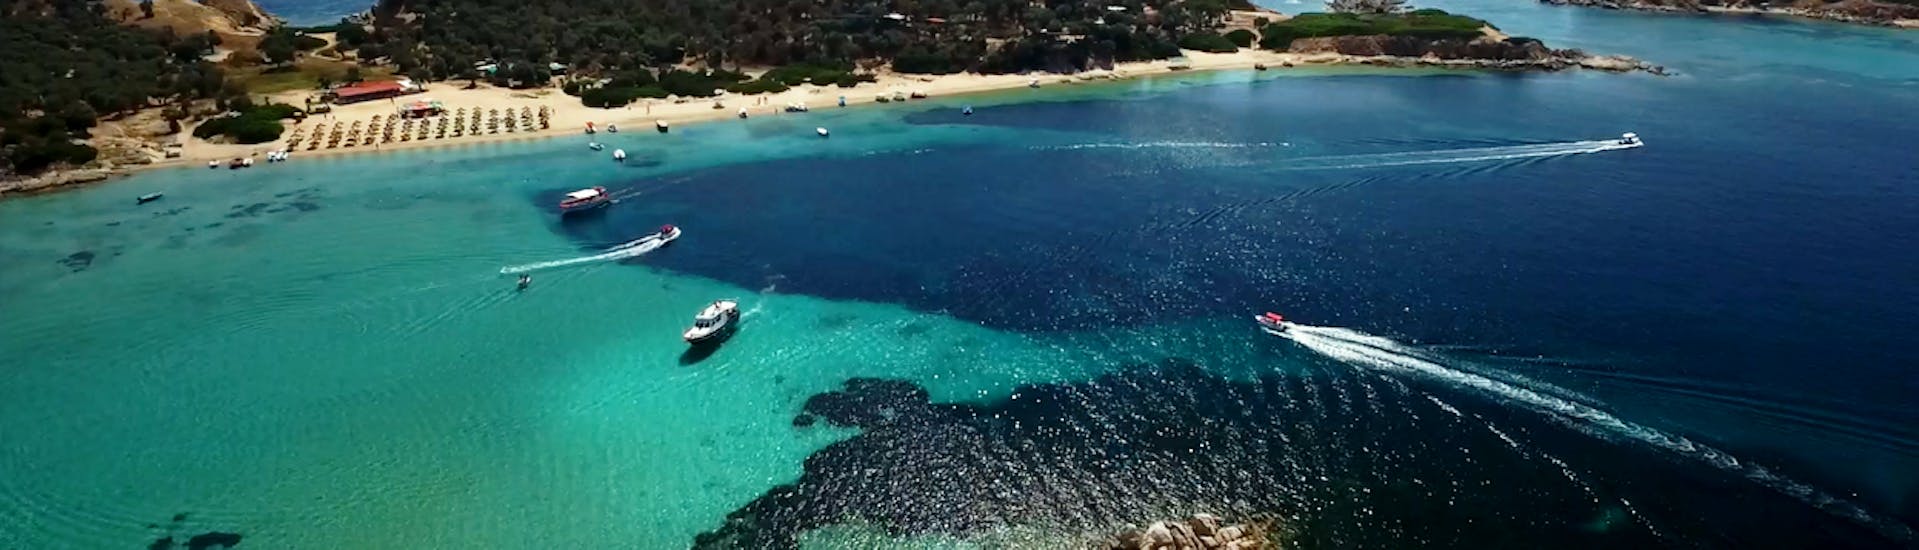 Insel von oben gezeigt während der Privaten Bootstour nach Ammouliani und zur Insel Drenia mit Schnorcheln mit Albatros Cruises Halkidiki.